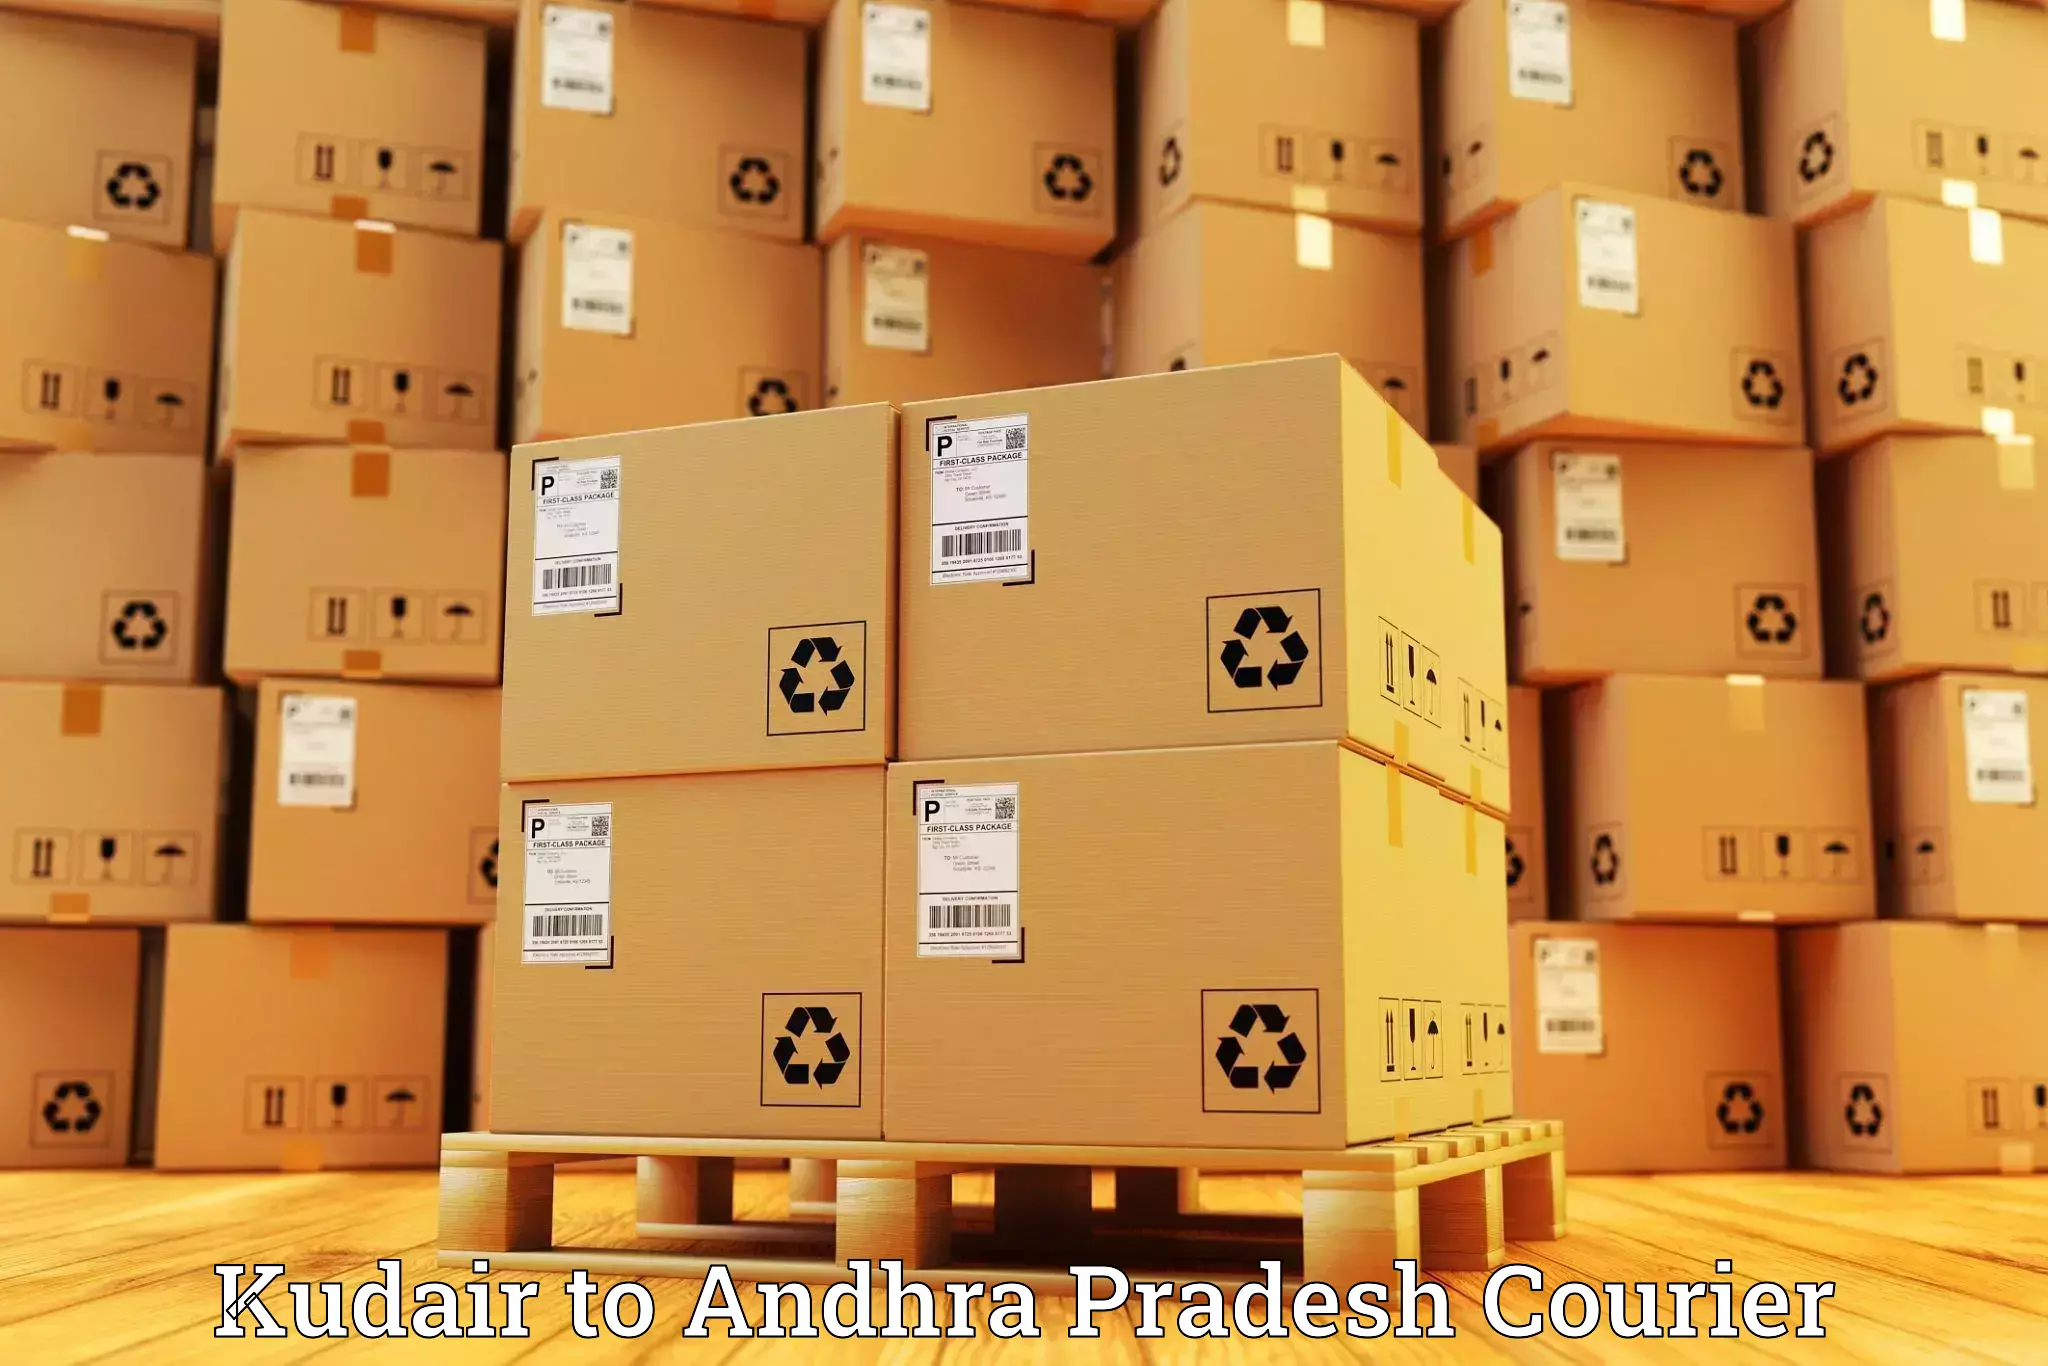 24/7 courier service Kudair to Vijayawada